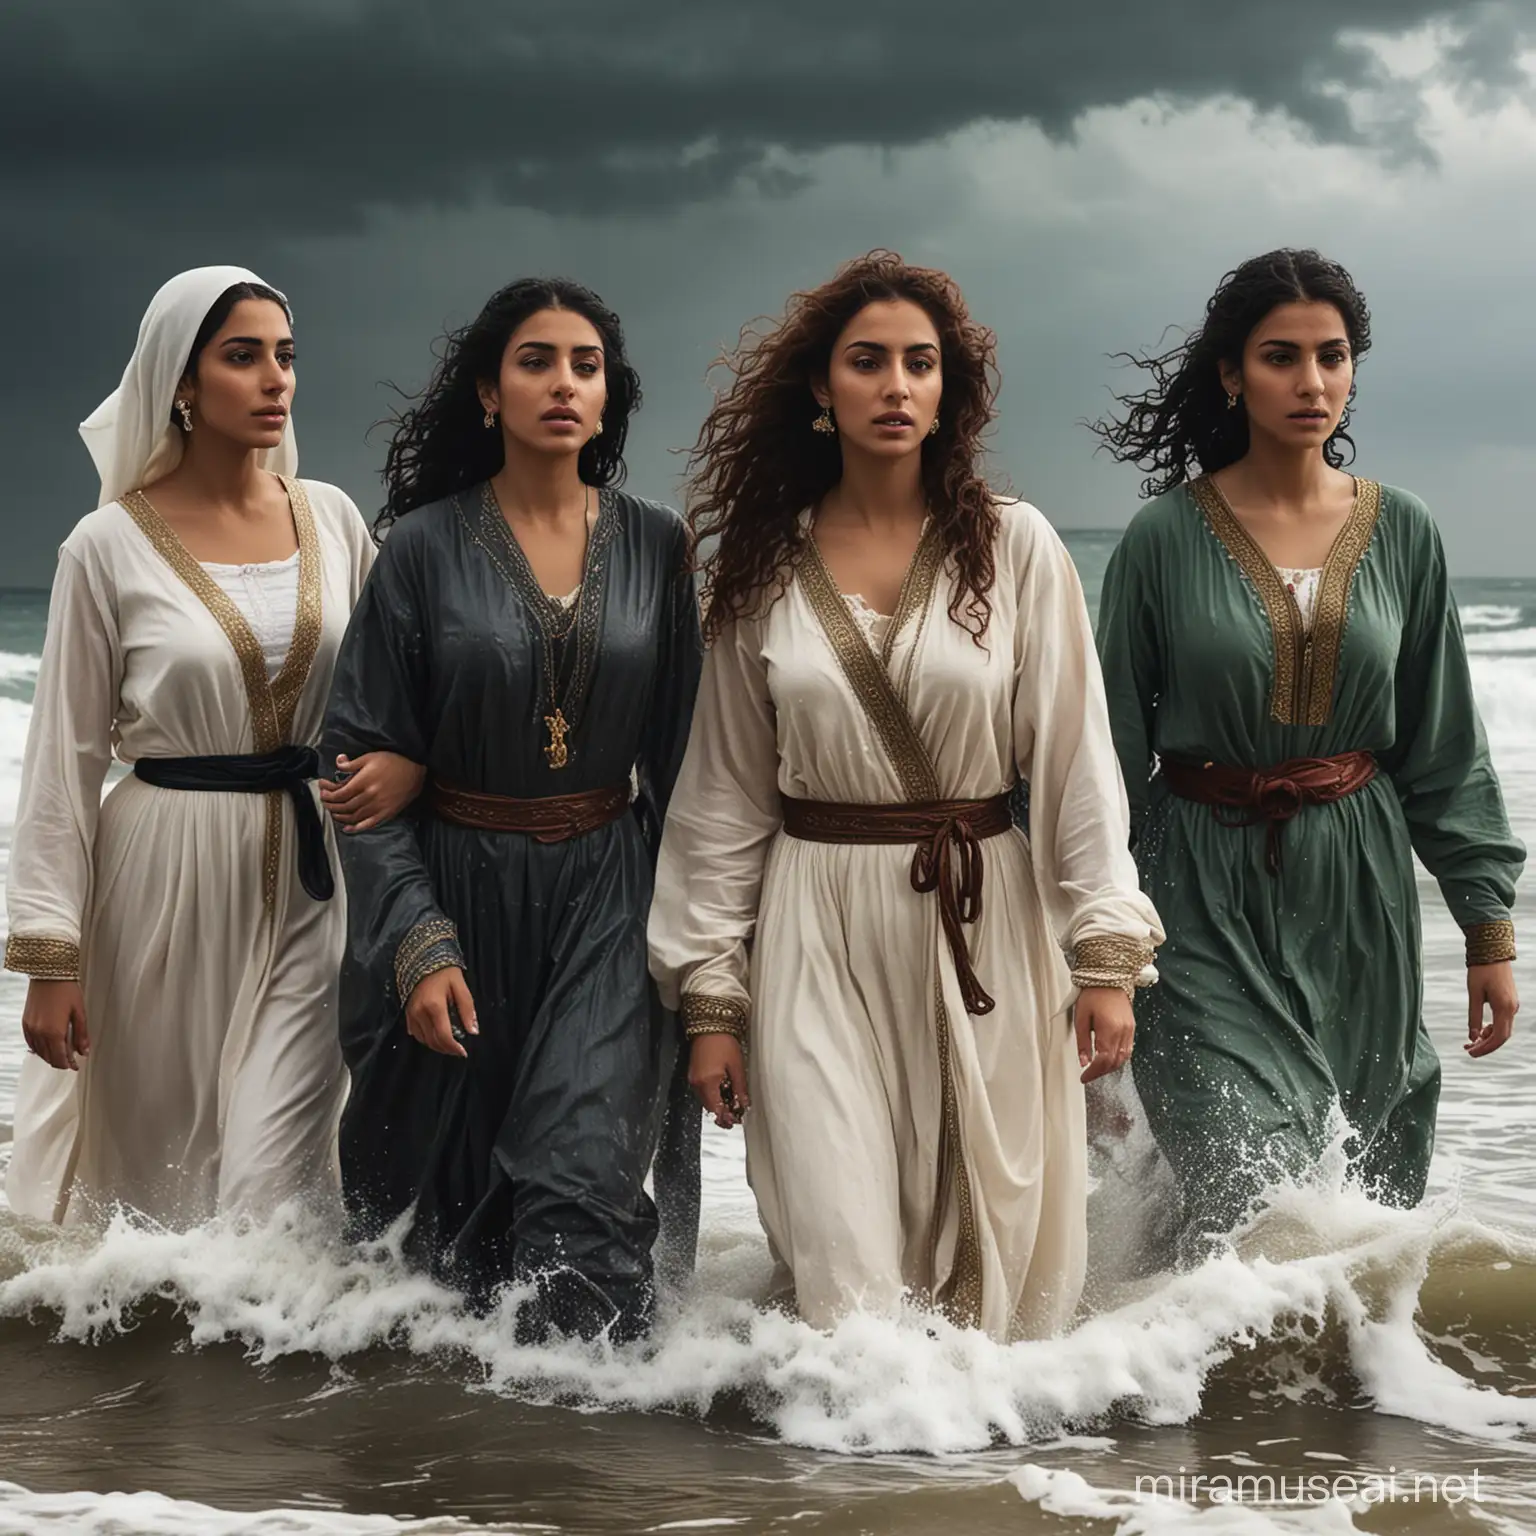 5 Femmes de type arabe toute 
habillées en tenue européenne  sortant d'une mer déchaînée avec un regard déterminée fière et doux à la fois